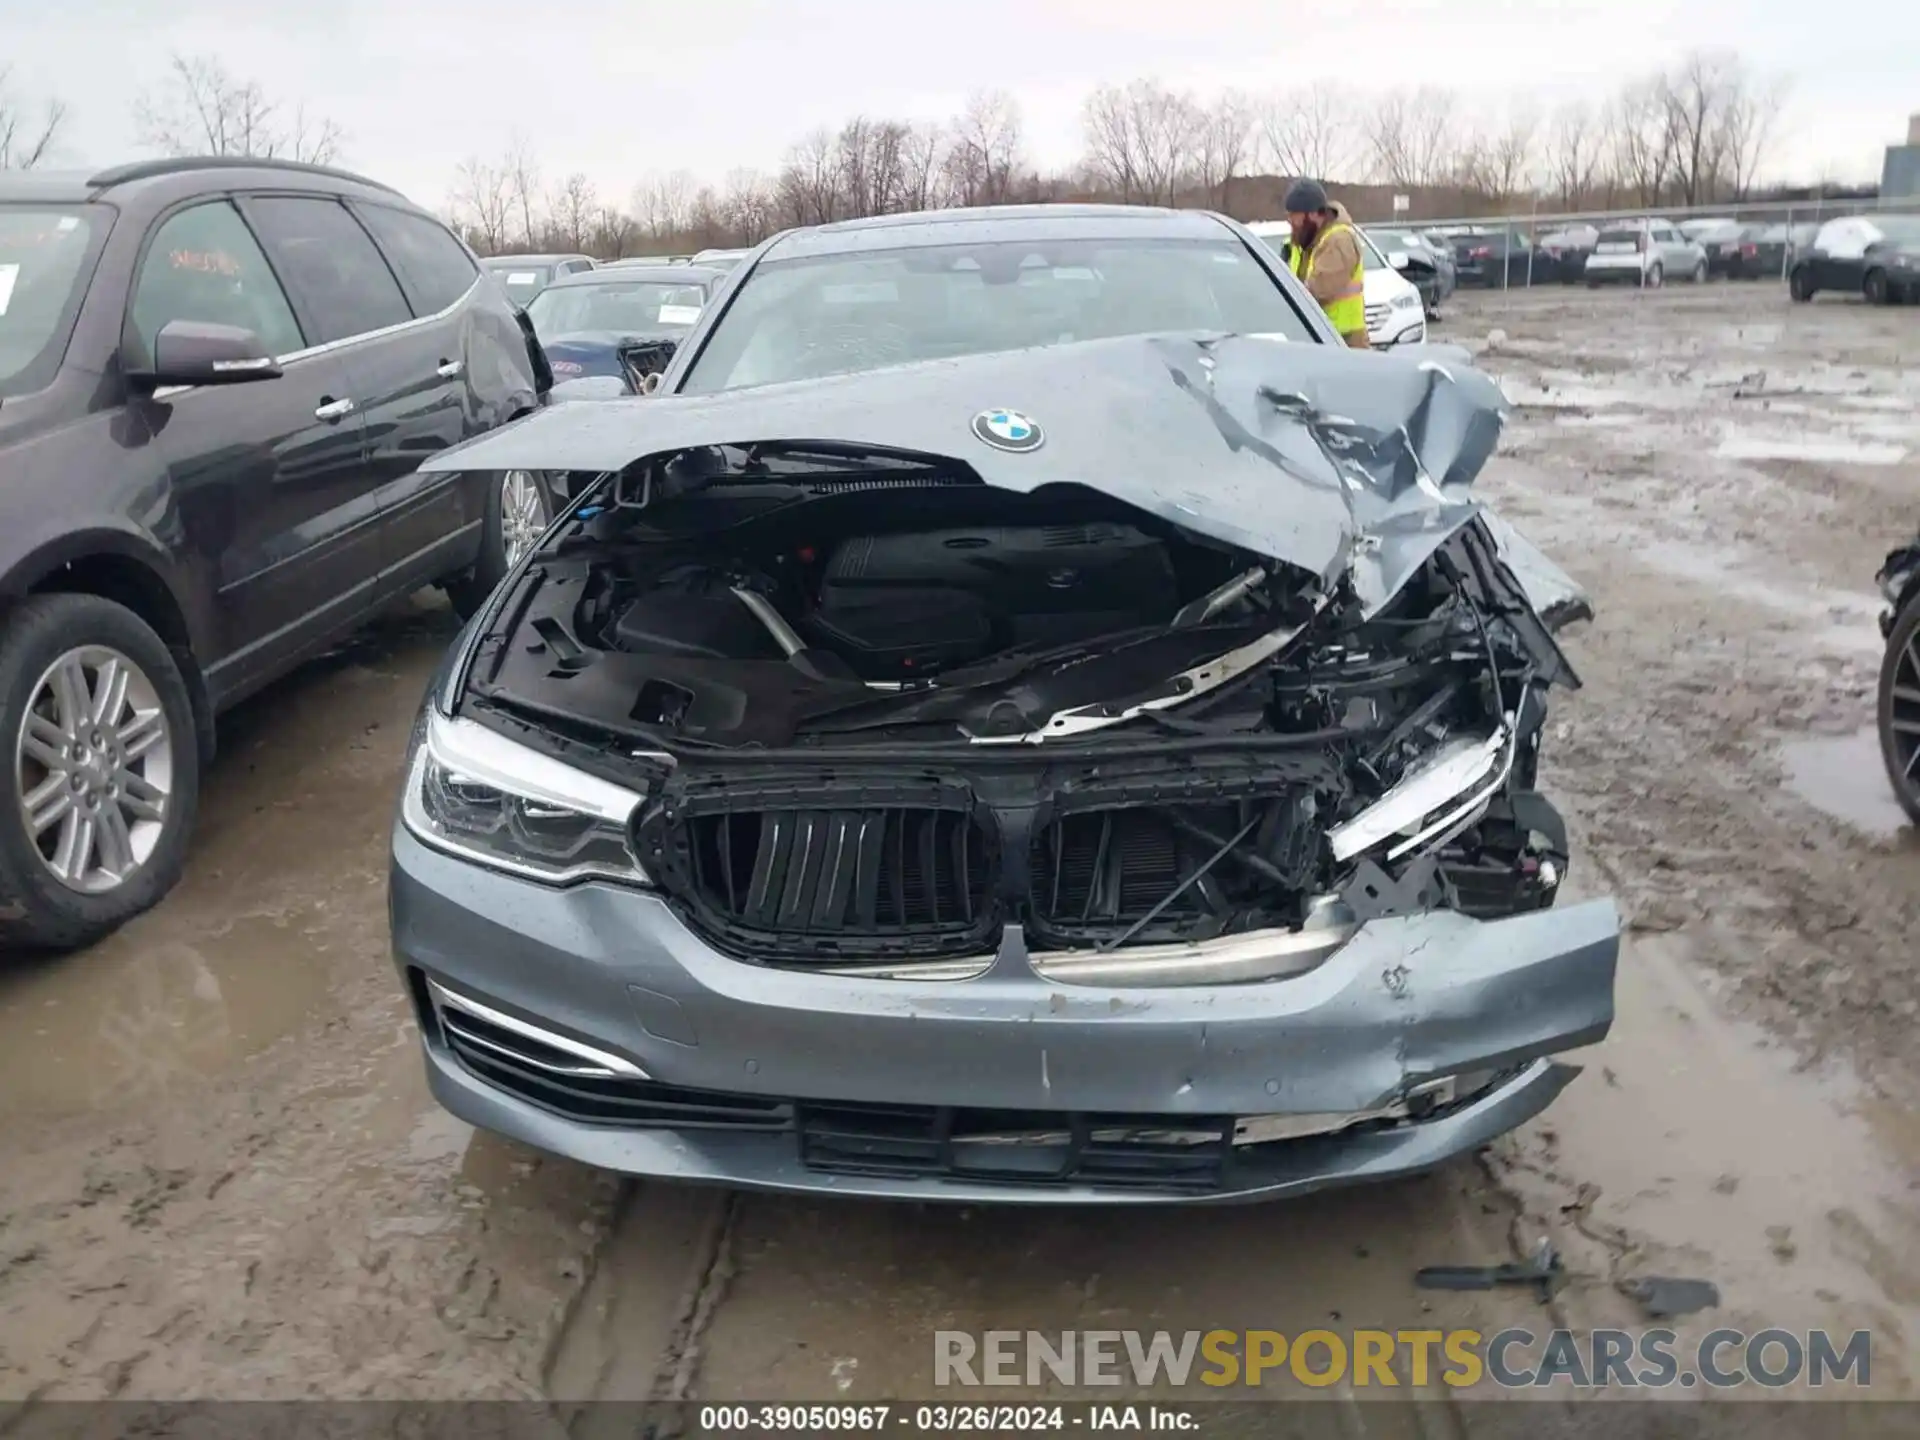 11 Photograph of a damaged car WBAJR7C09LWW77741 BMW 530I 2020